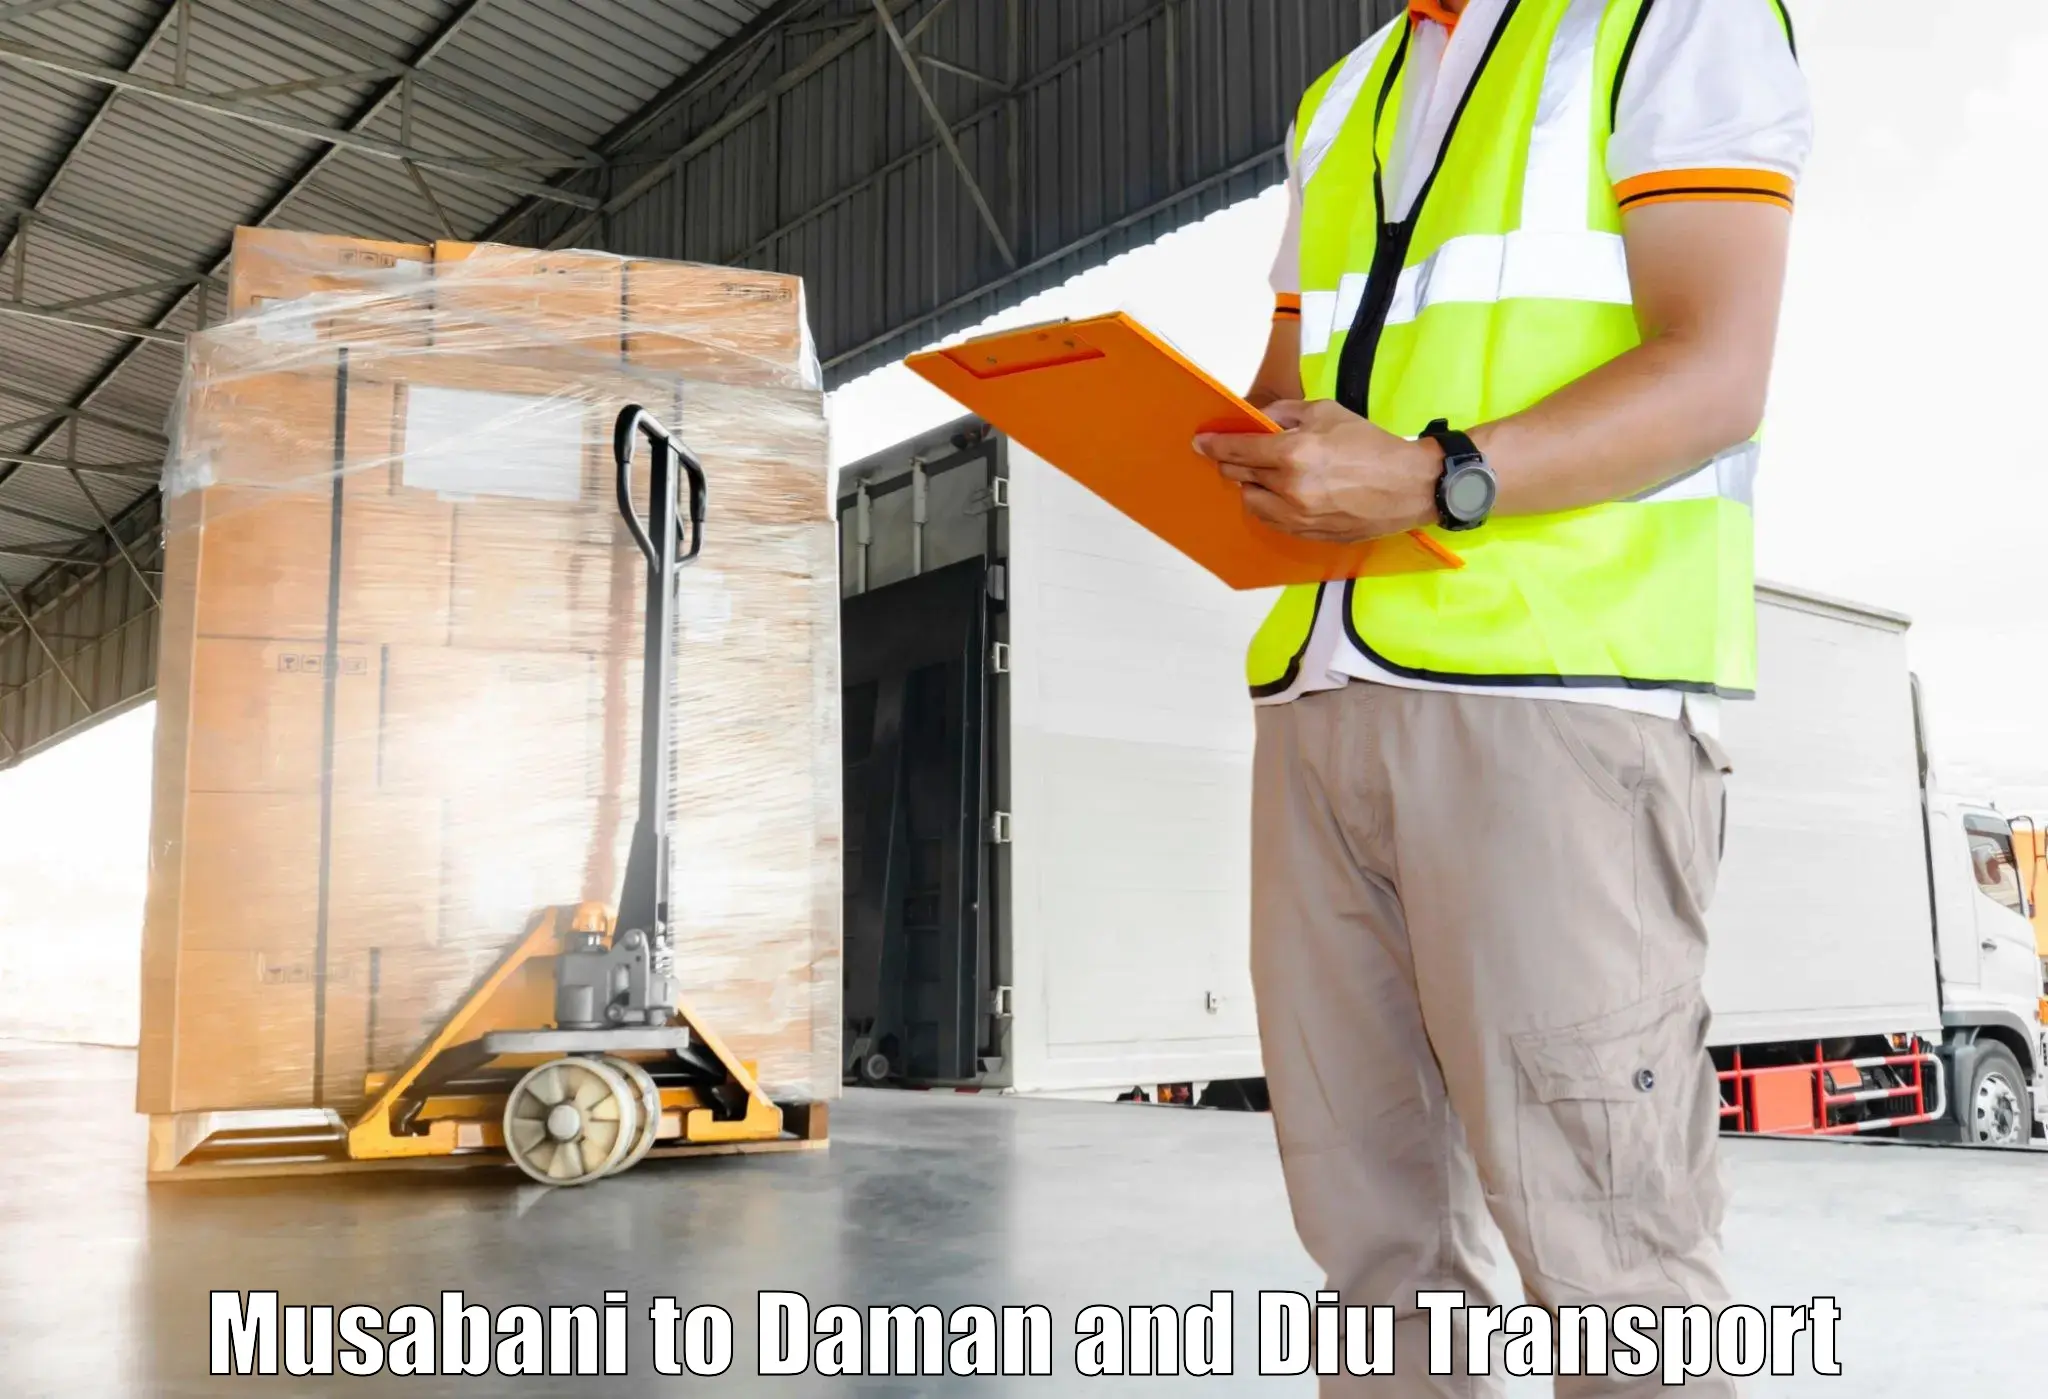 Land transport services Musabani to Diu